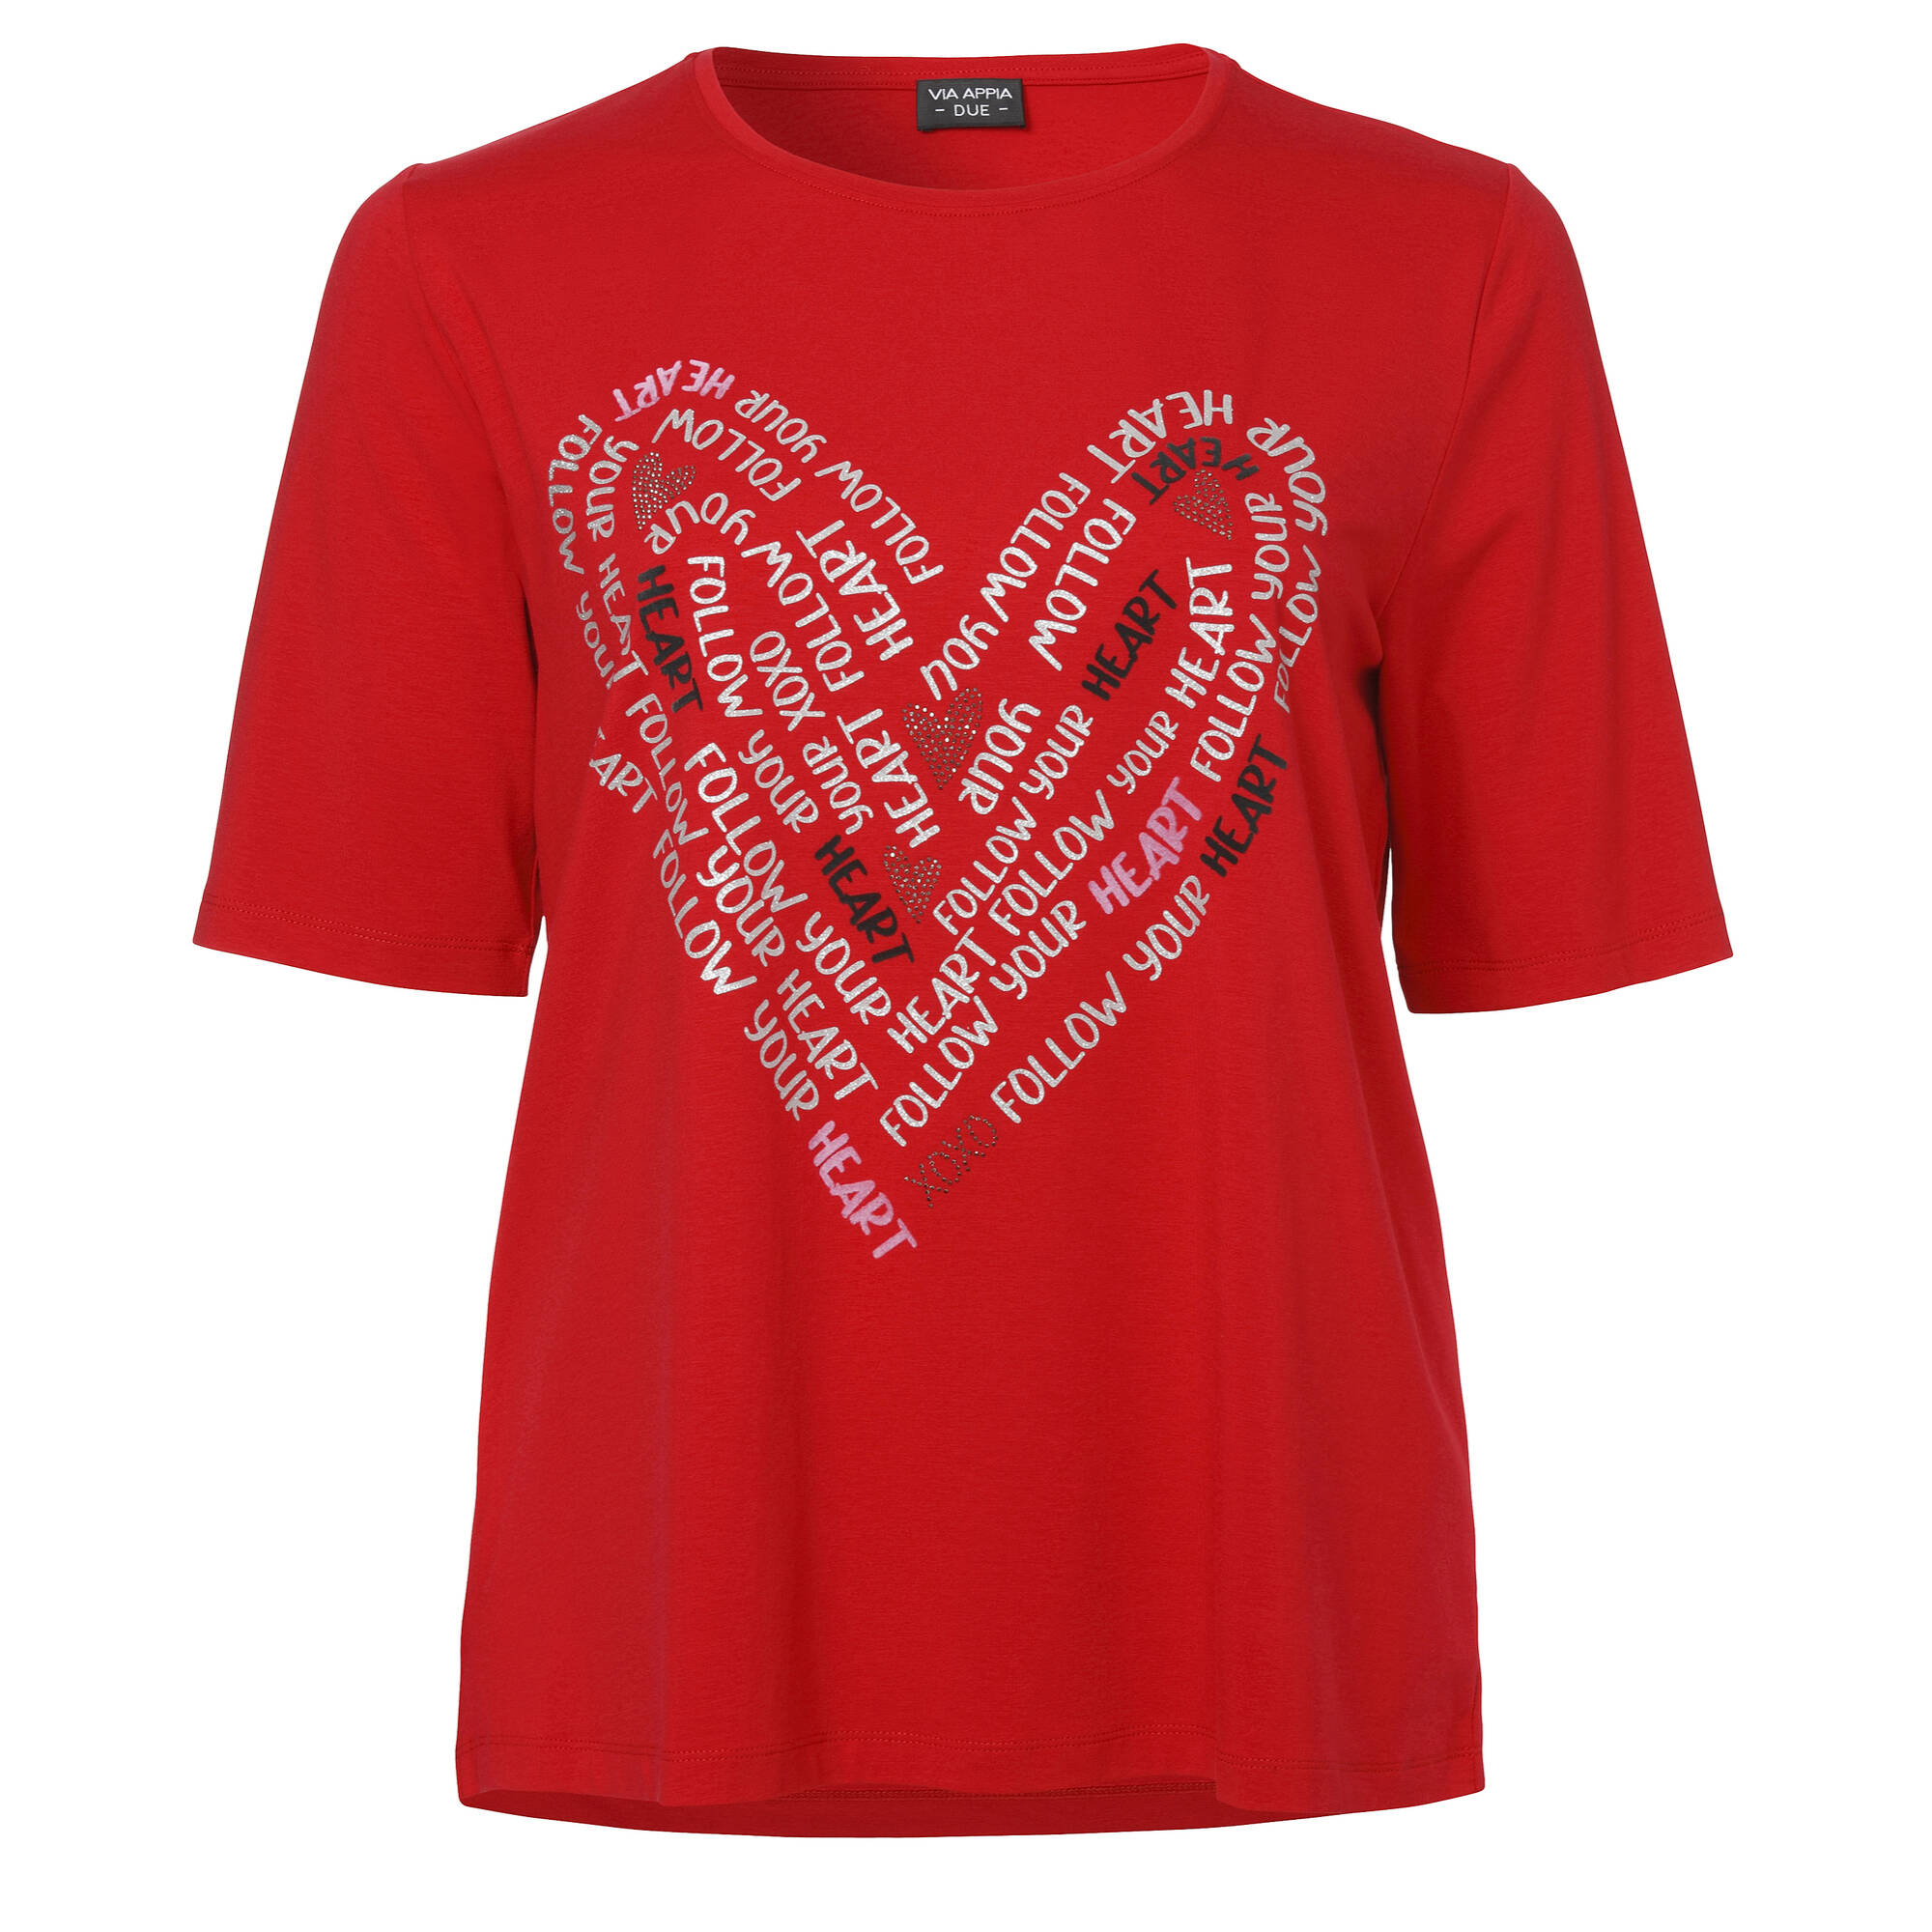 Romantisches T-Shirt mit grafischem Motiv